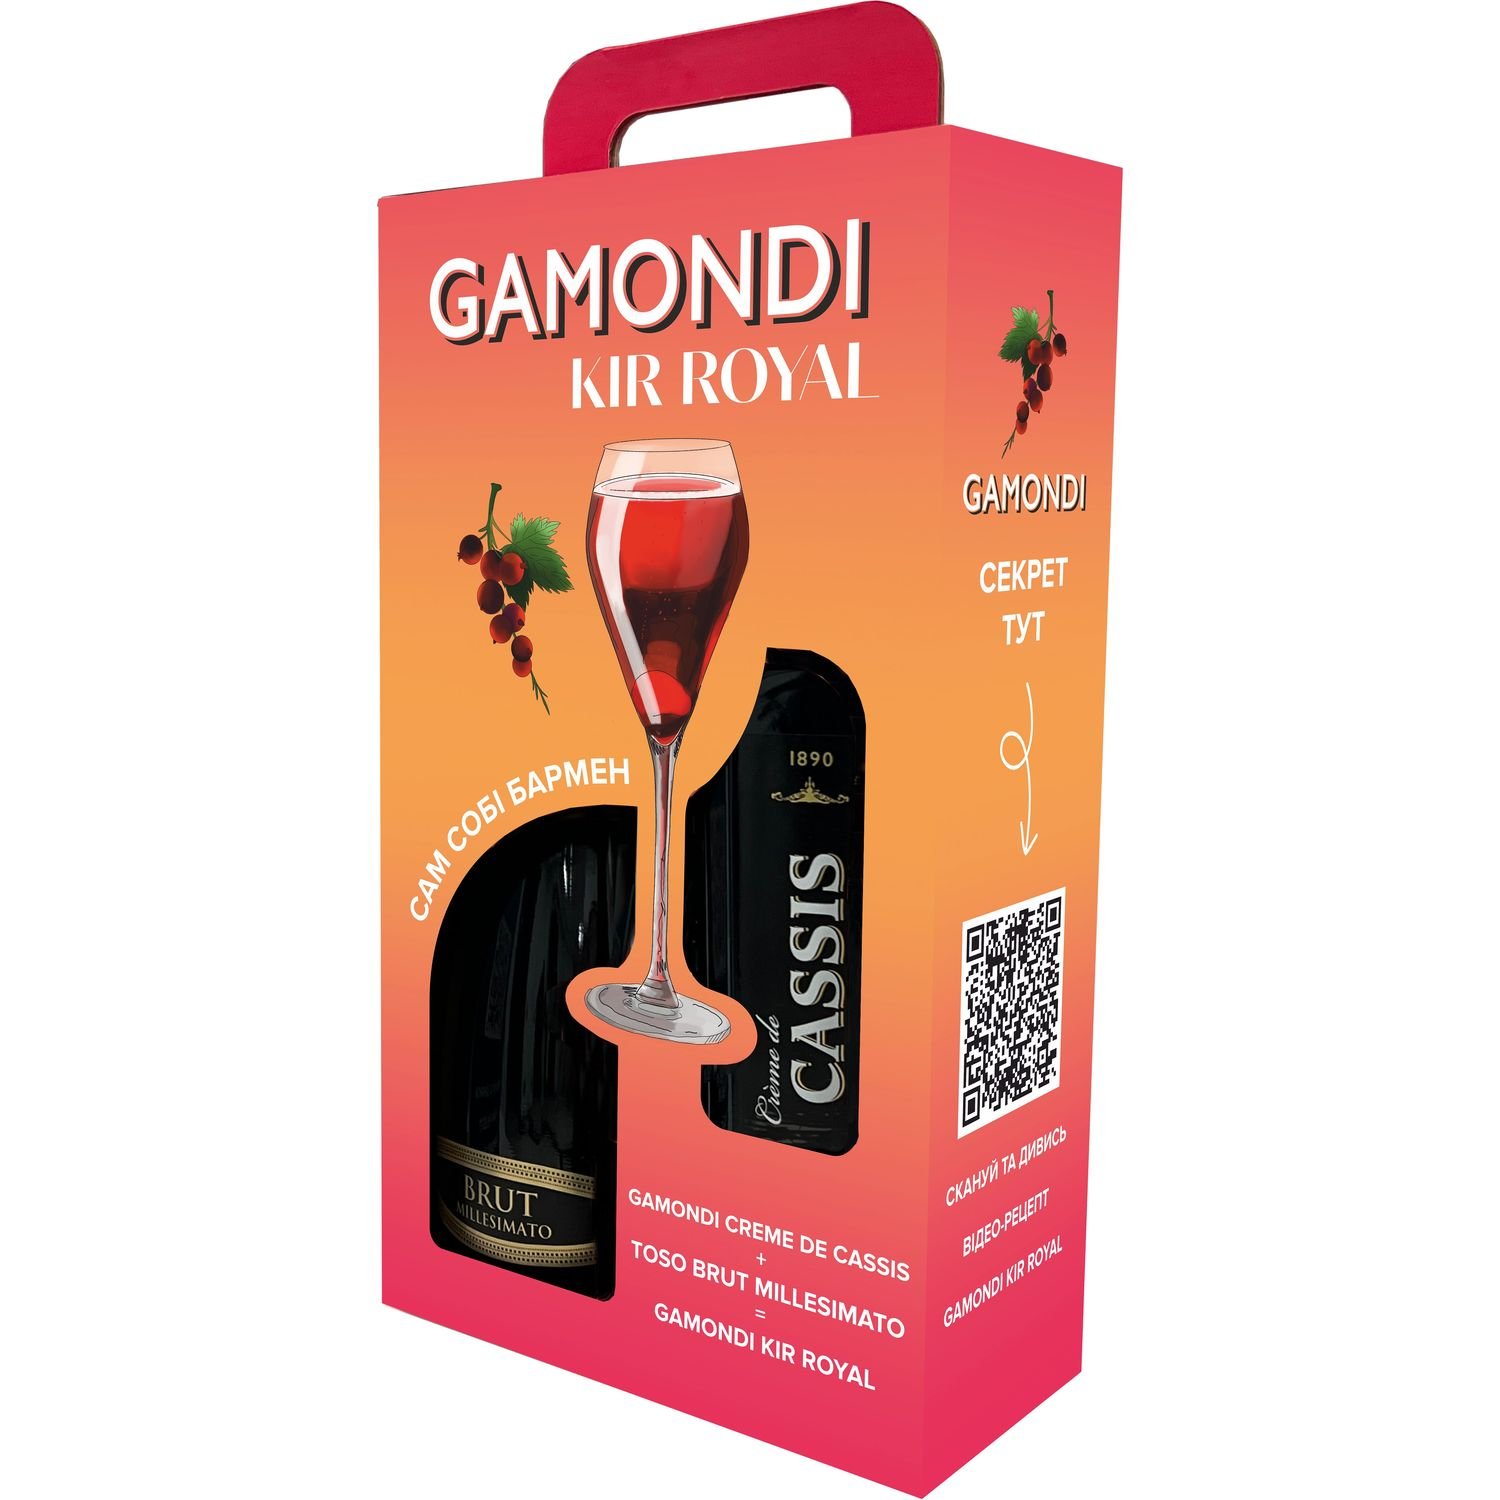 Набір Gamondi Kir Royal: Ігристе вино Toso Brut Millesimato, 0,75 л + Лікер Gamondi Creme de Cassis, 15%, 1 л, в подарунковій упаковці - фото 1